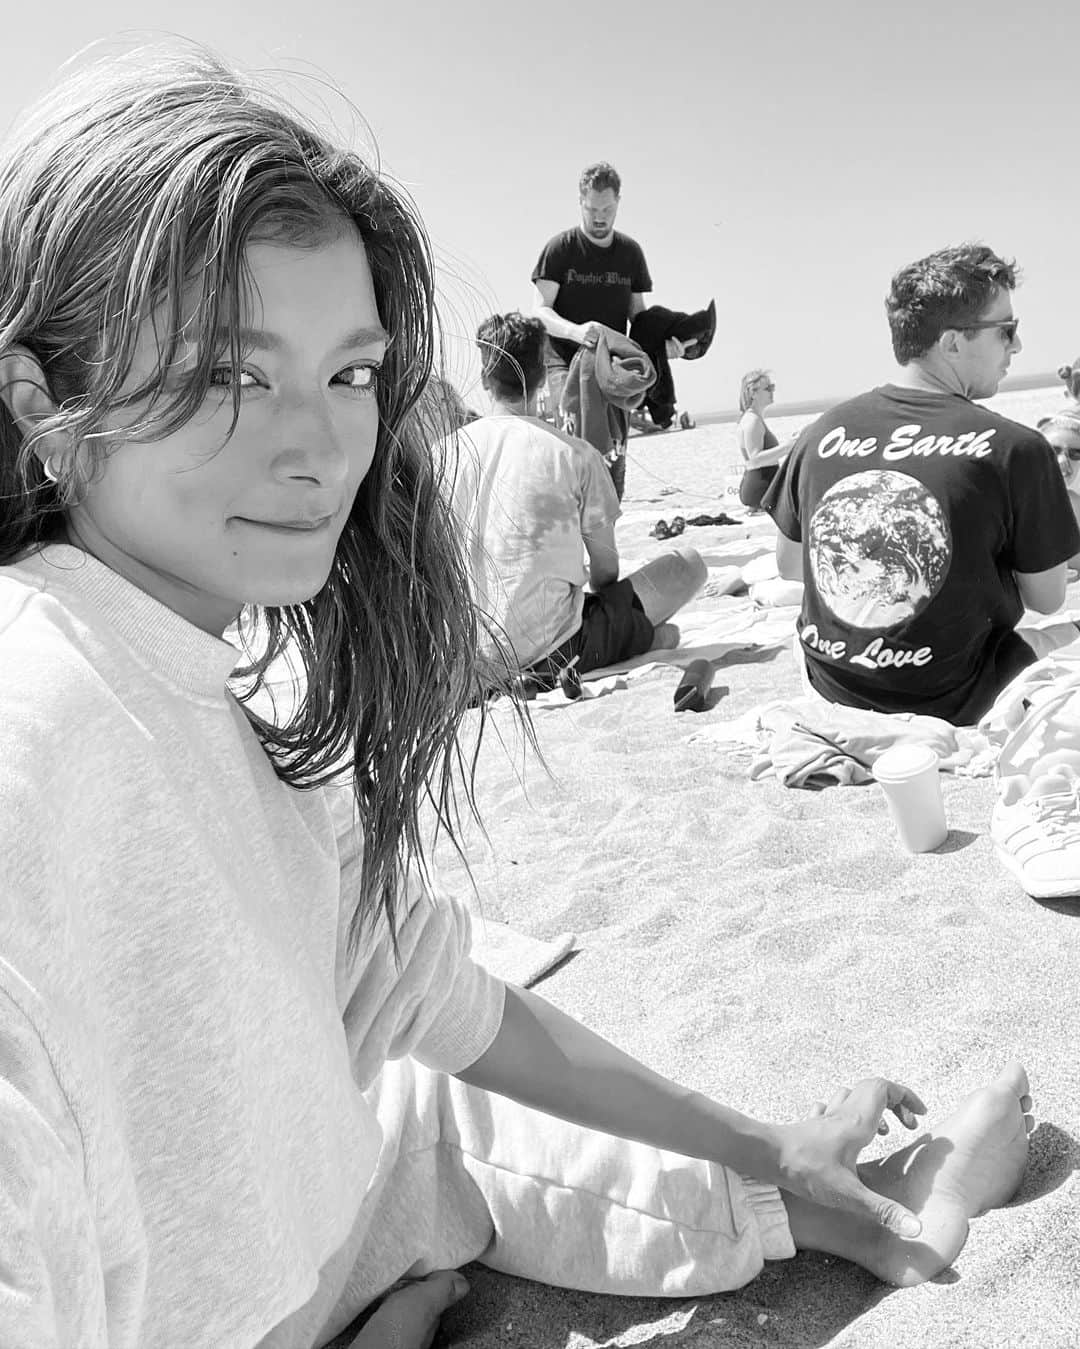 ローラのインスタグラム：「Sunday beach breathwork🌊今日は、カリフォルニアにあるベニスビーチで呼吸法のトレーニングを受けにきたよ❗️  たまたま携帯でみつけてよやくをしてみたの💕  人間と呼吸ってすごく深いなぁって。  わたしは、ストレスを感じたり落ち込んだりすると、呼吸が浅くなるの。逆に癒しや幸せを感じると呼吸がゆっくり流れて深くなっている事を感じるの。  でも、やっぱりいつも意識をするのは得意じゃなくって。。  どんどんレッスンをしてうまくバランス良くできるようになりたいなって。  このレッスンの時、最初の10分は何も感じなくて、、そうしたら、急にヒーリングの音楽と共に涙がでてきて、、心の奥にある何かが流れた感じがしたの、、。そして一緒にいる人達と、人種も全てを超えた、なにか深い愛とリスペクトを感じたんだ。。んん。言葉で表すのは難しいなぁ😁  また訪れてみようっと。 いつか習得をしたらみんなにもシェアをしたいなぁ🌱  ありがとう　@op_e___n 💕  I happened to find it on my phone and made a reservation for beach breathwork🌊  I'm a very sensitive person, so when I feel stressed or anxious, my breathing becomes shallow. When I feel happy, I breathe deeply and for longer. But I'm not used to being conscious of breathing yet.  Breathing with people is very deep.  For the first 10 minutes I didn’t feel anything, and then suddenly tears came out and I felt that something in my heart was flowing.  After finishing, I got up and felt like smiling with everyone I met. People from all walks of life and from different backgrounds. There's no walls up there,  help each other and feel loved.   It's a deep bond between people..  I started to appreciate and love something about myself💕  I would like to visit again!!  If I learn it well someday, I want to be able to share it with everyone😁💕 ♥️Thank you @op_e___n」